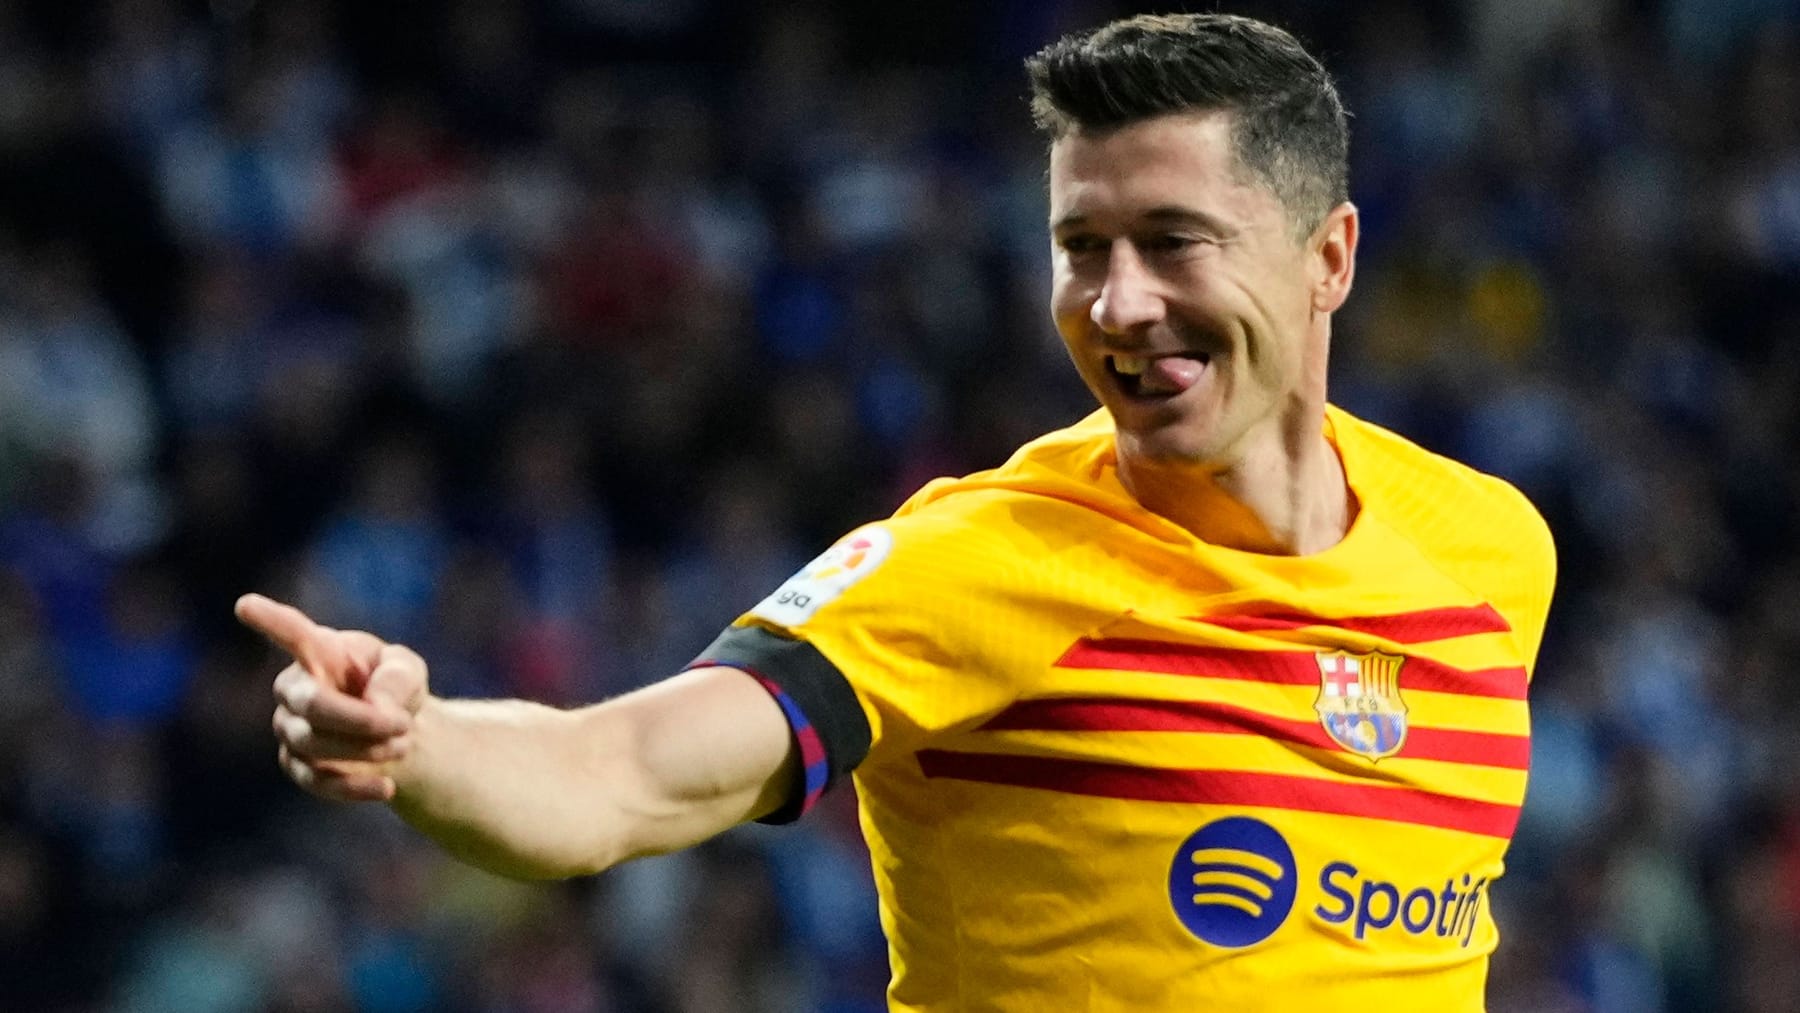 Nach klarem Derby-Sieg: Barça ist spanischer Meister – Lewandowski in Gala-Form